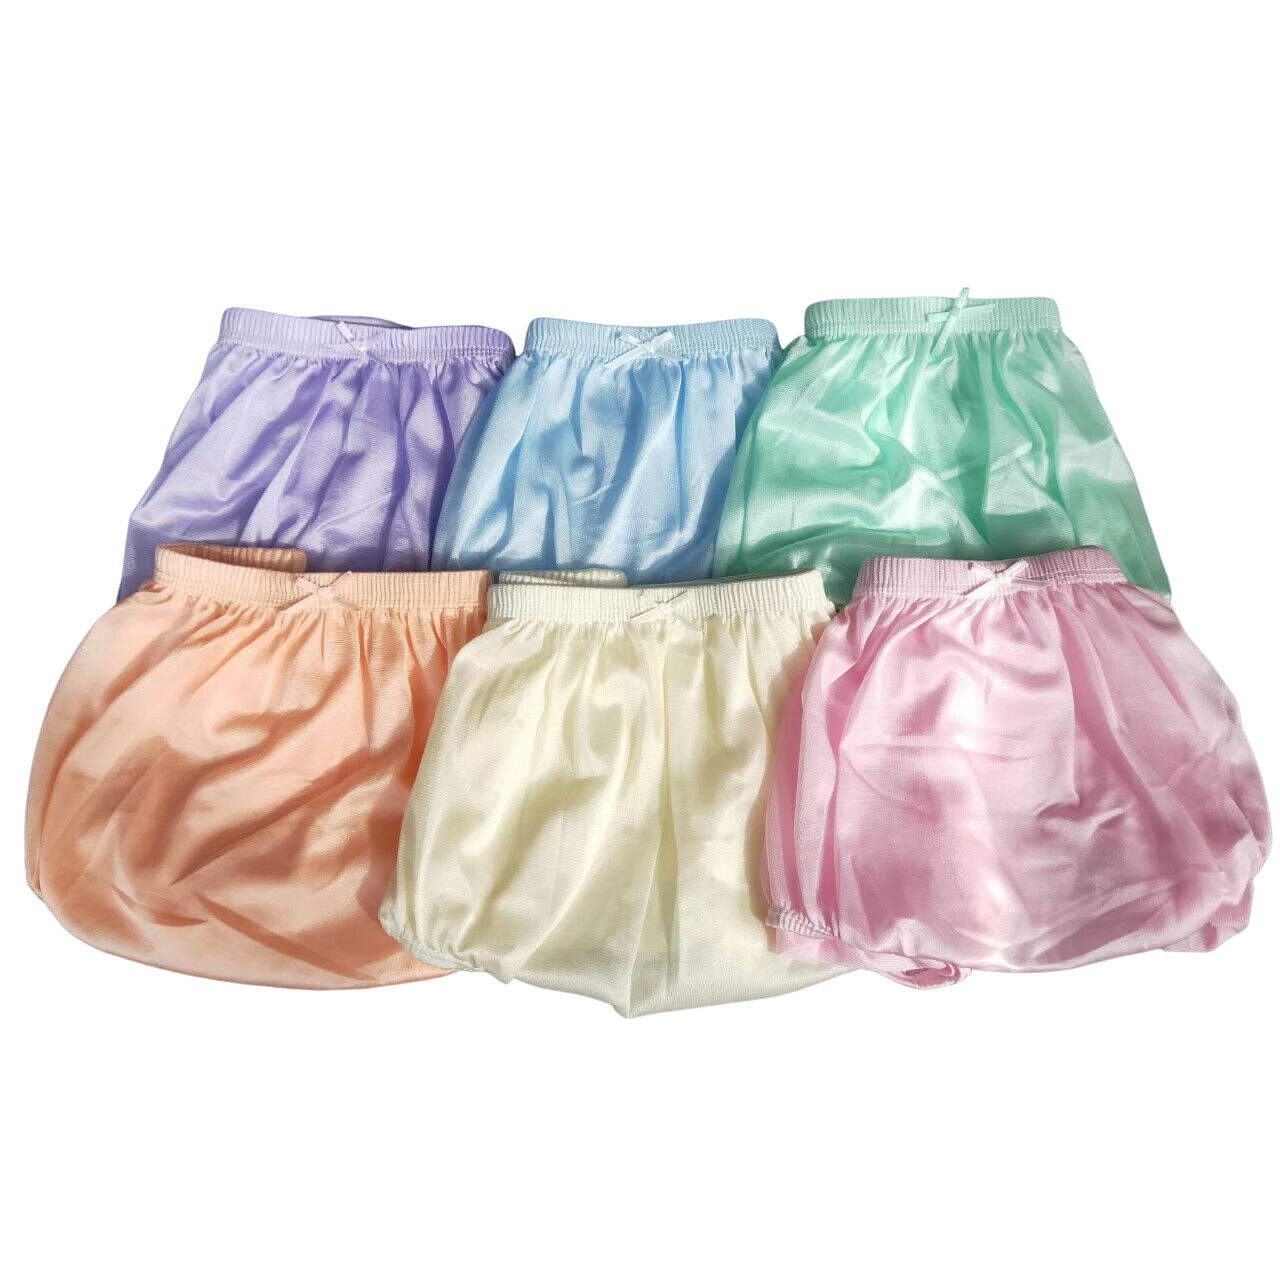 6x Lingerie Soft Nylon Full Brief Panties Women Underwear Size XL VTG Granny New bambam.246 Underwear Size XL VTG Granny - фотография #3